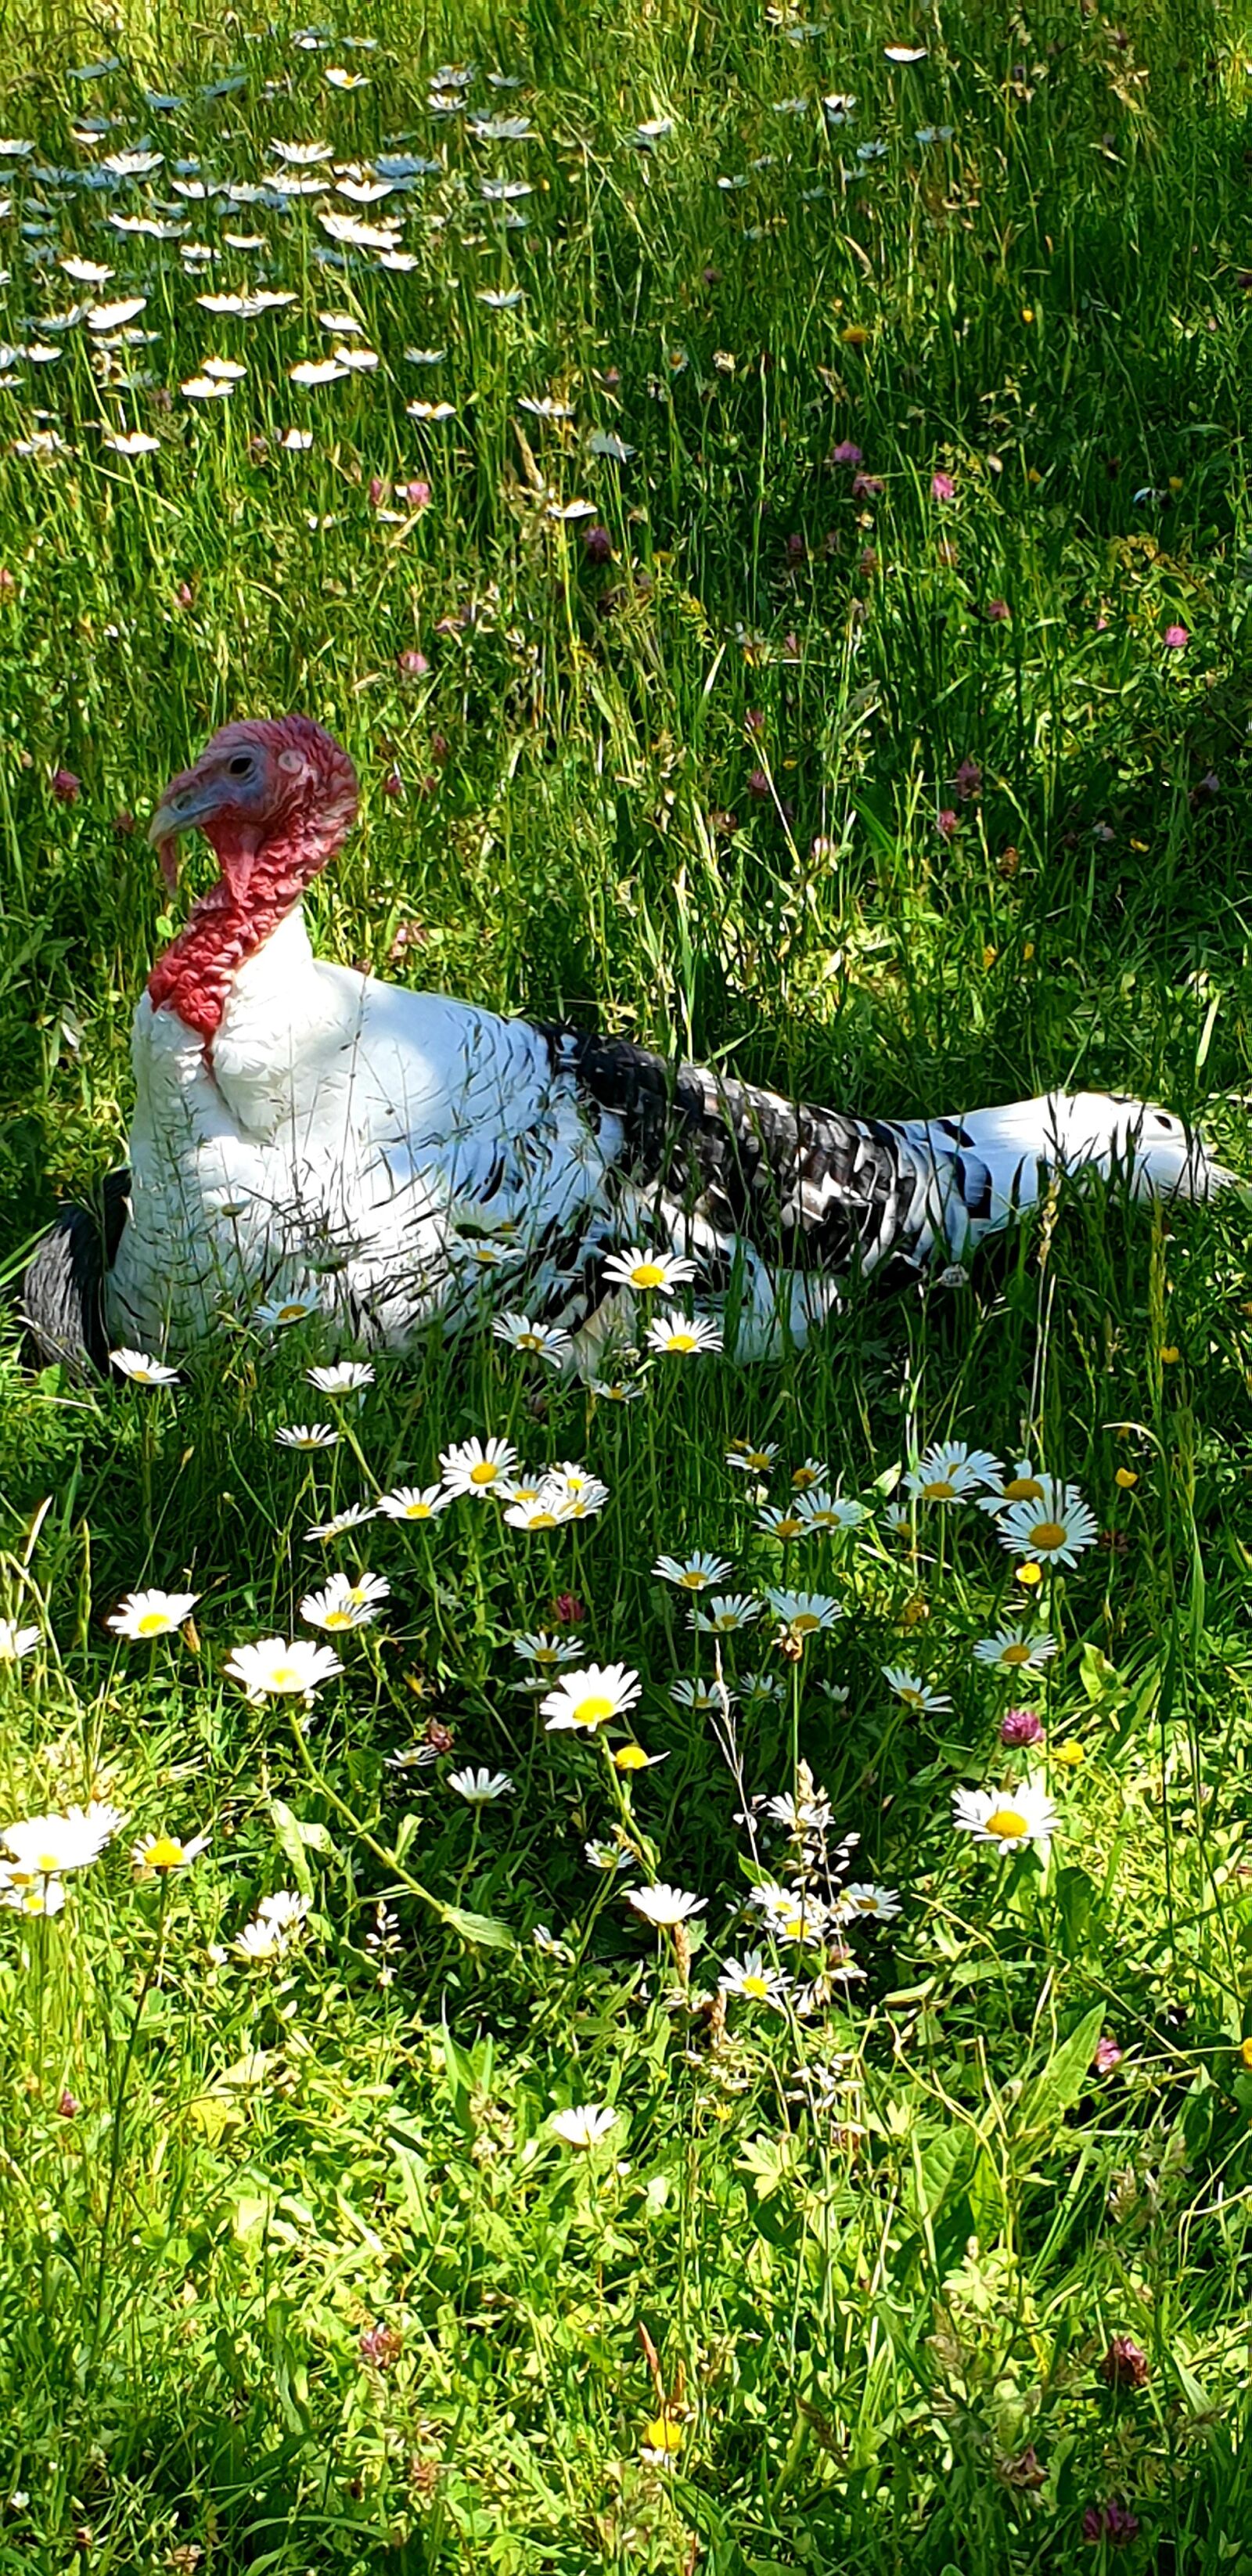 Samsung Galaxy S9 sample photo. Chicken, animal, brakel chicken photography